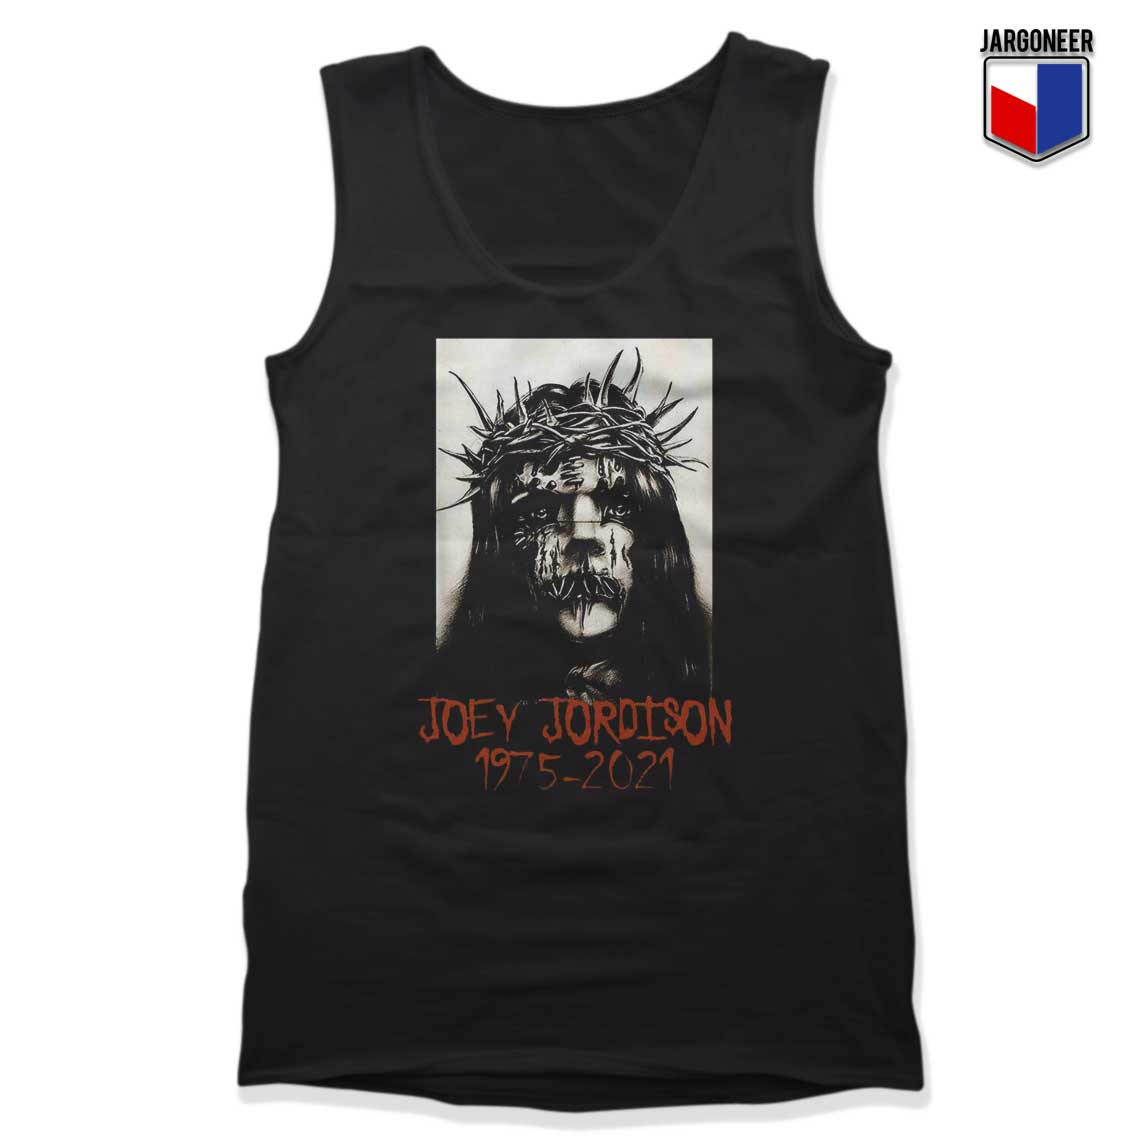 Joey Jordison Slipknot 1975 2021 Tank Top - Shop Unique Graphic Cool Shirt Designs